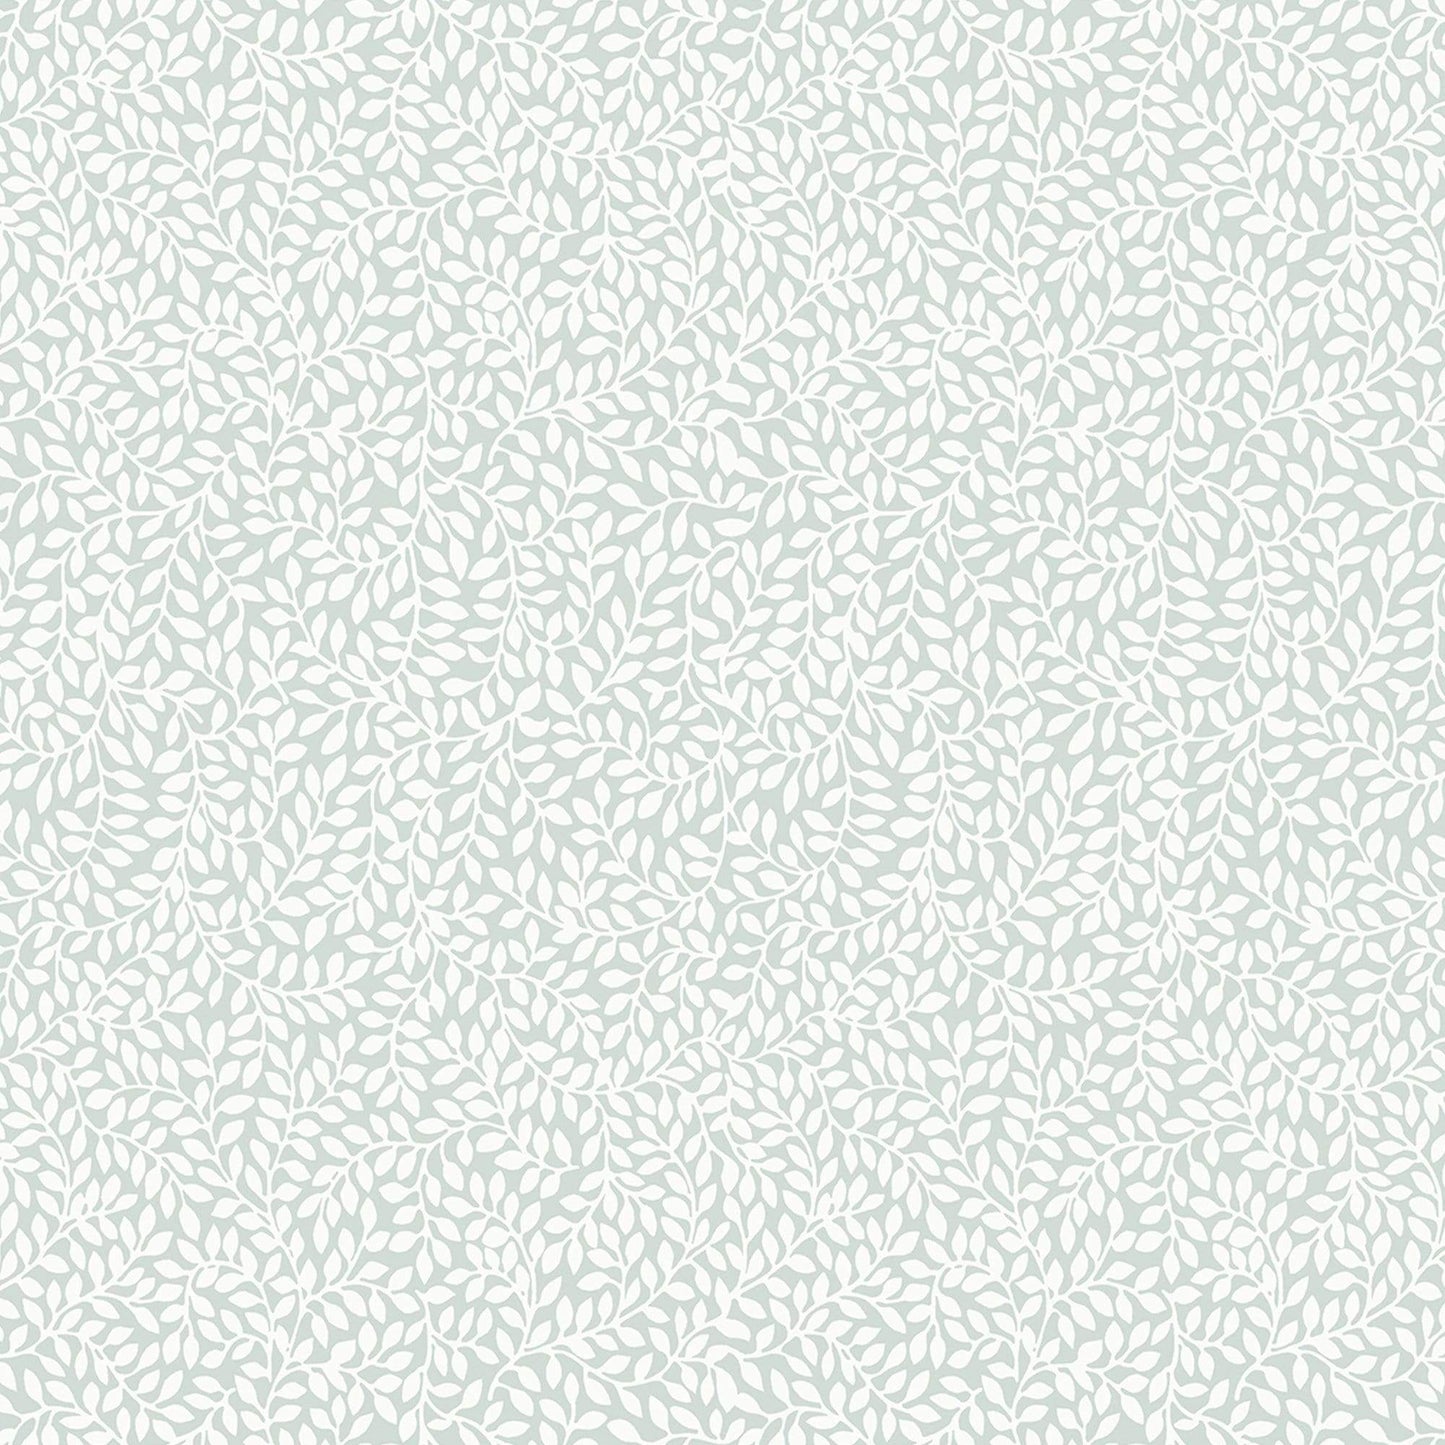 Wallpaper  -  Laura Ashley Little Vines Duck Egg Wallpaper - 113351  -  60001886